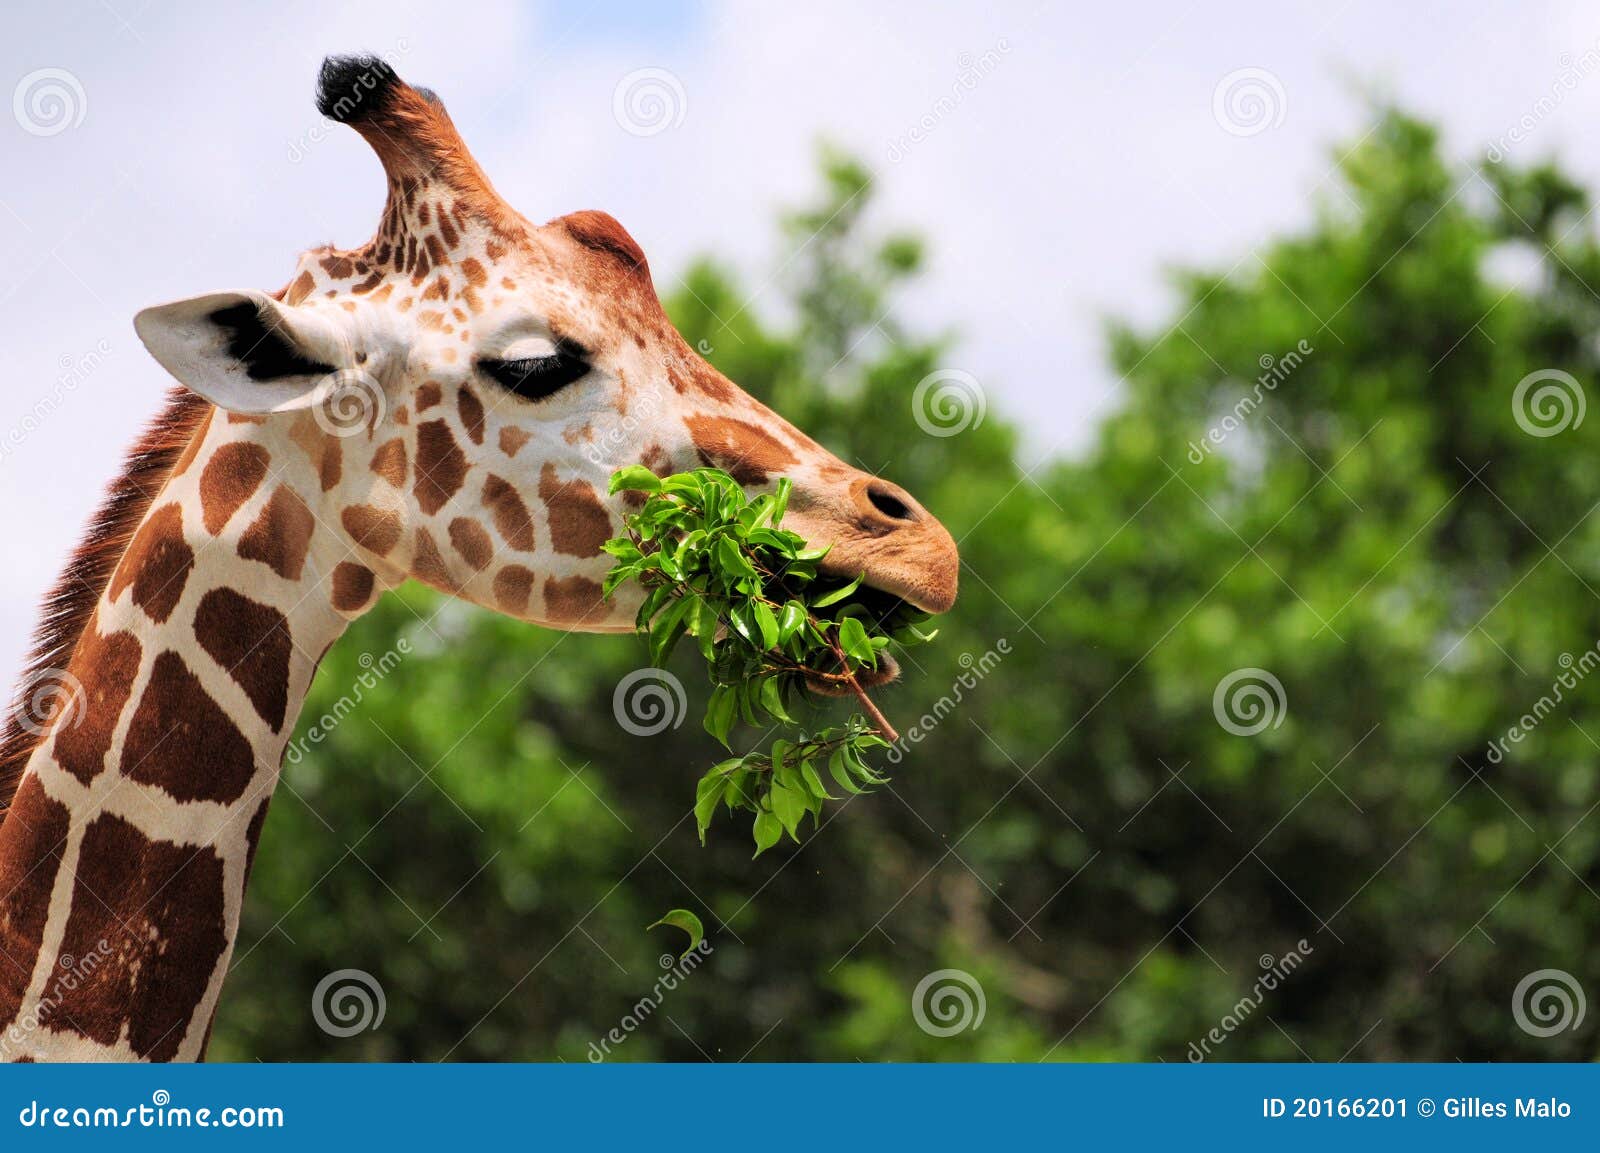 giraffe eating leaves